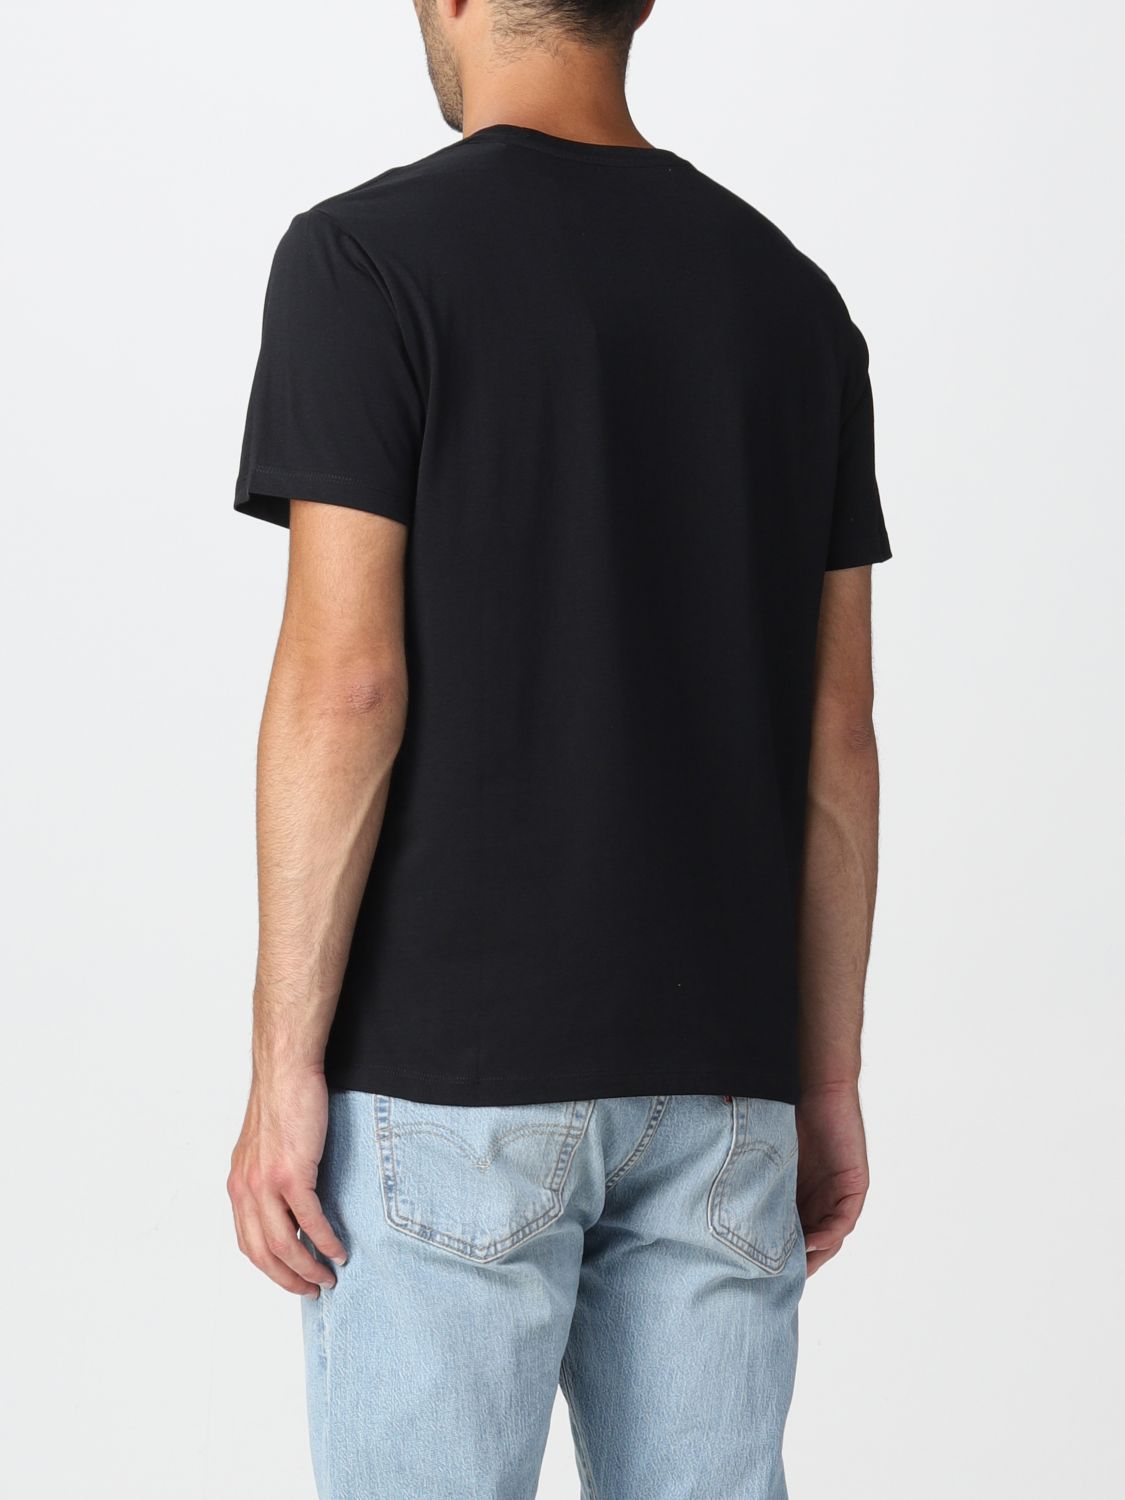 Levi's Outlet: t-shirt for man - Black | Levi's t-shirt 177830137 ...